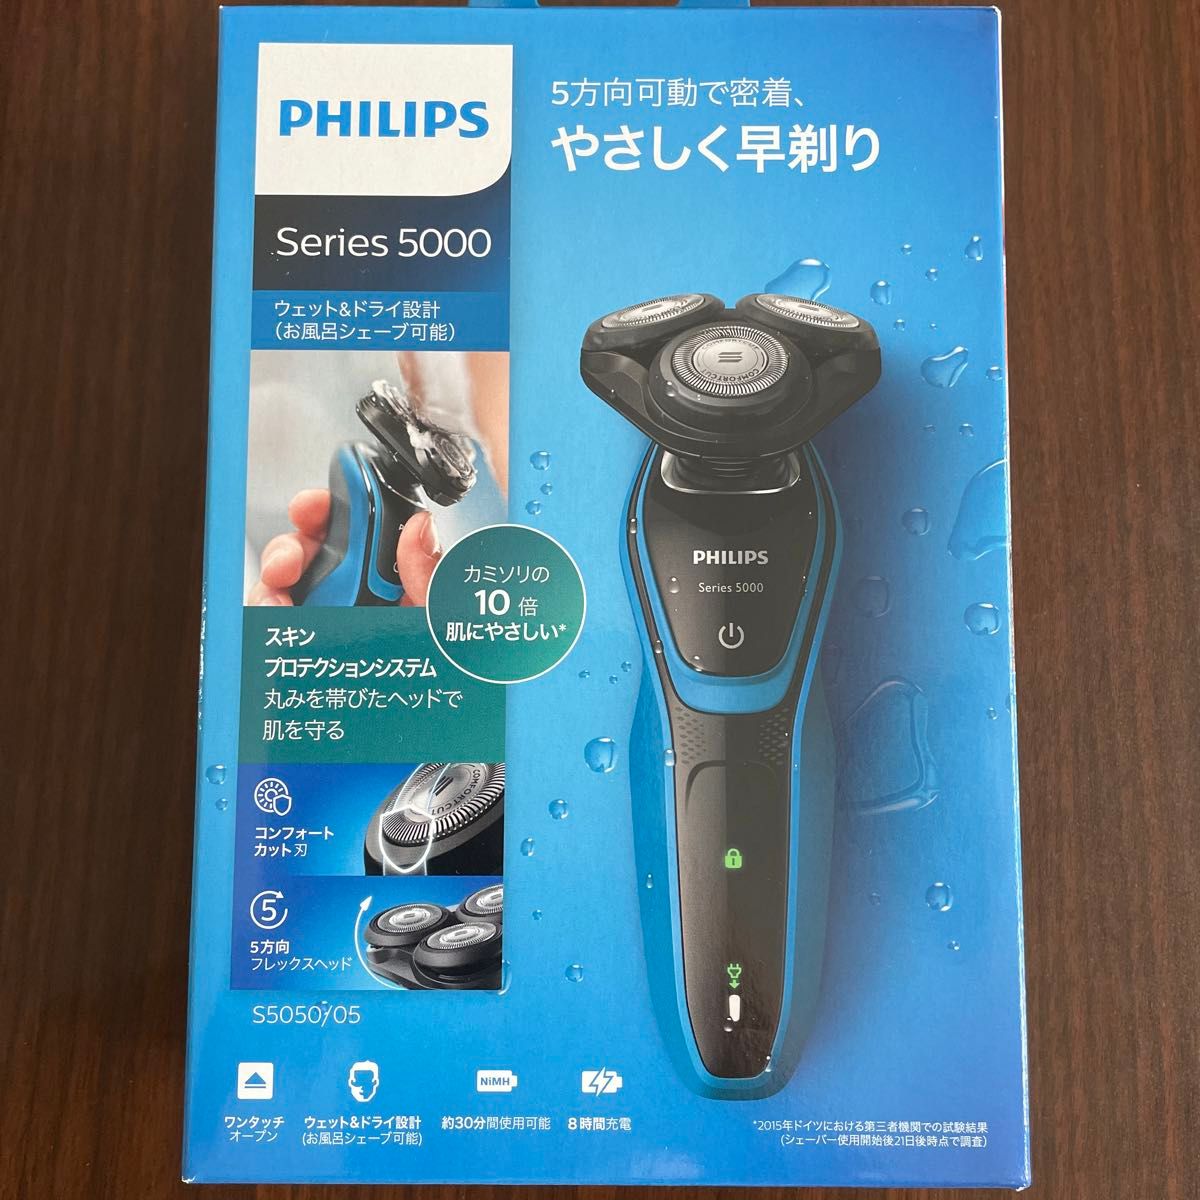 PHILIPS フィリップス 5000シリーズ メンズ ウェット&ドライ 電気シェーバー S5050/05 髭剃り 電動シェーバー